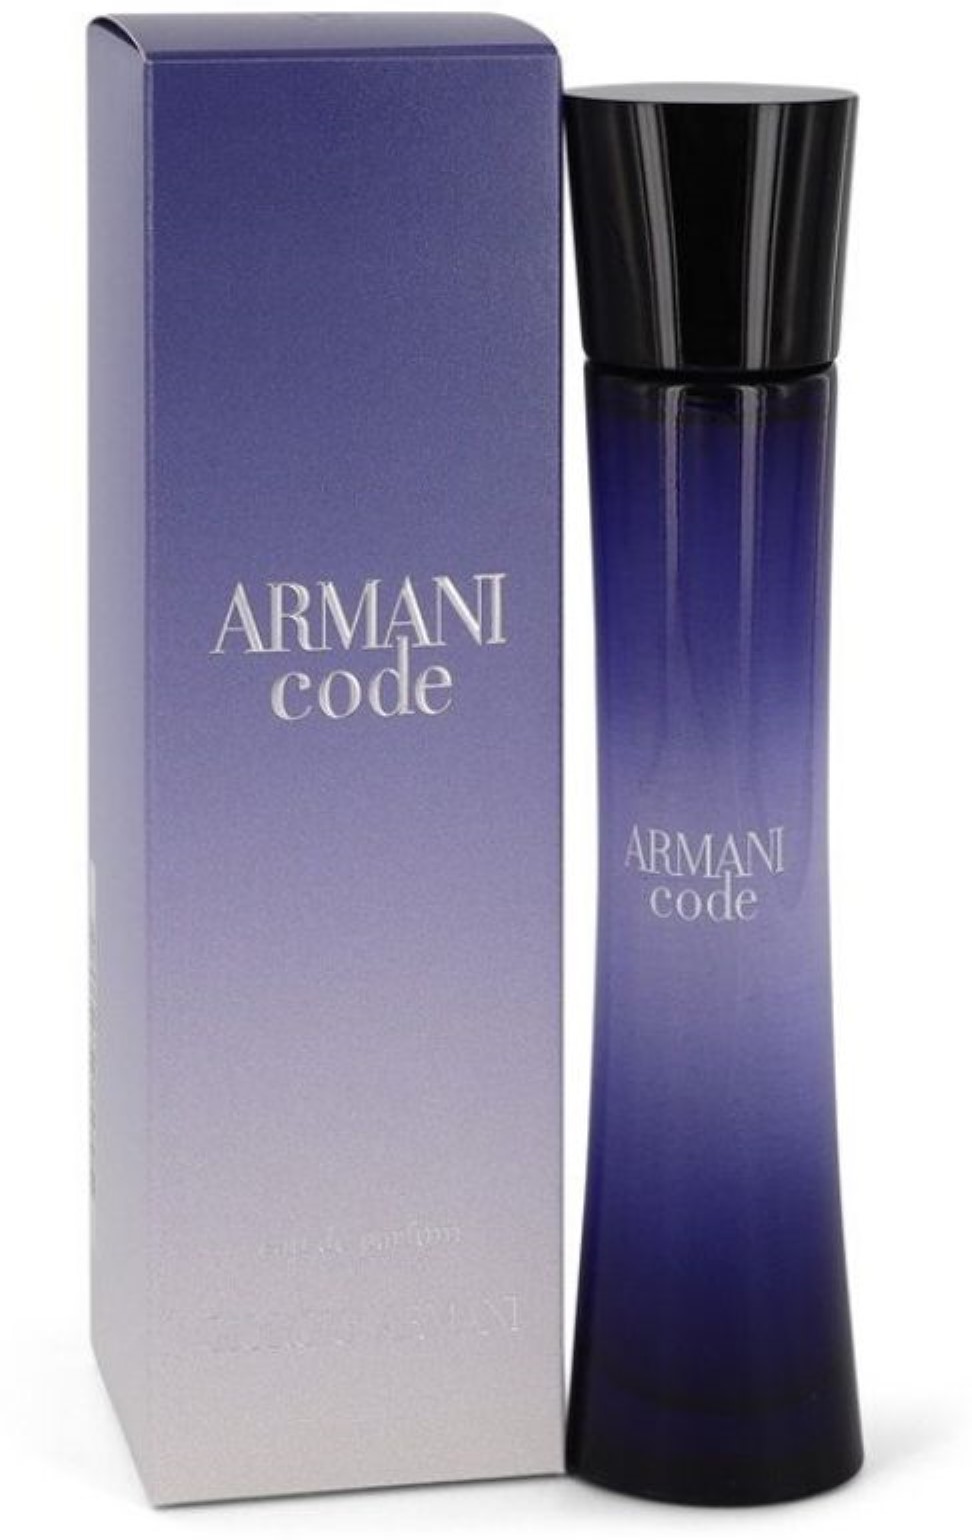 Giorgio Armani Code Eau De Parfum Spray, Perfume for Women, 1.7 Oz - image 1 of 2